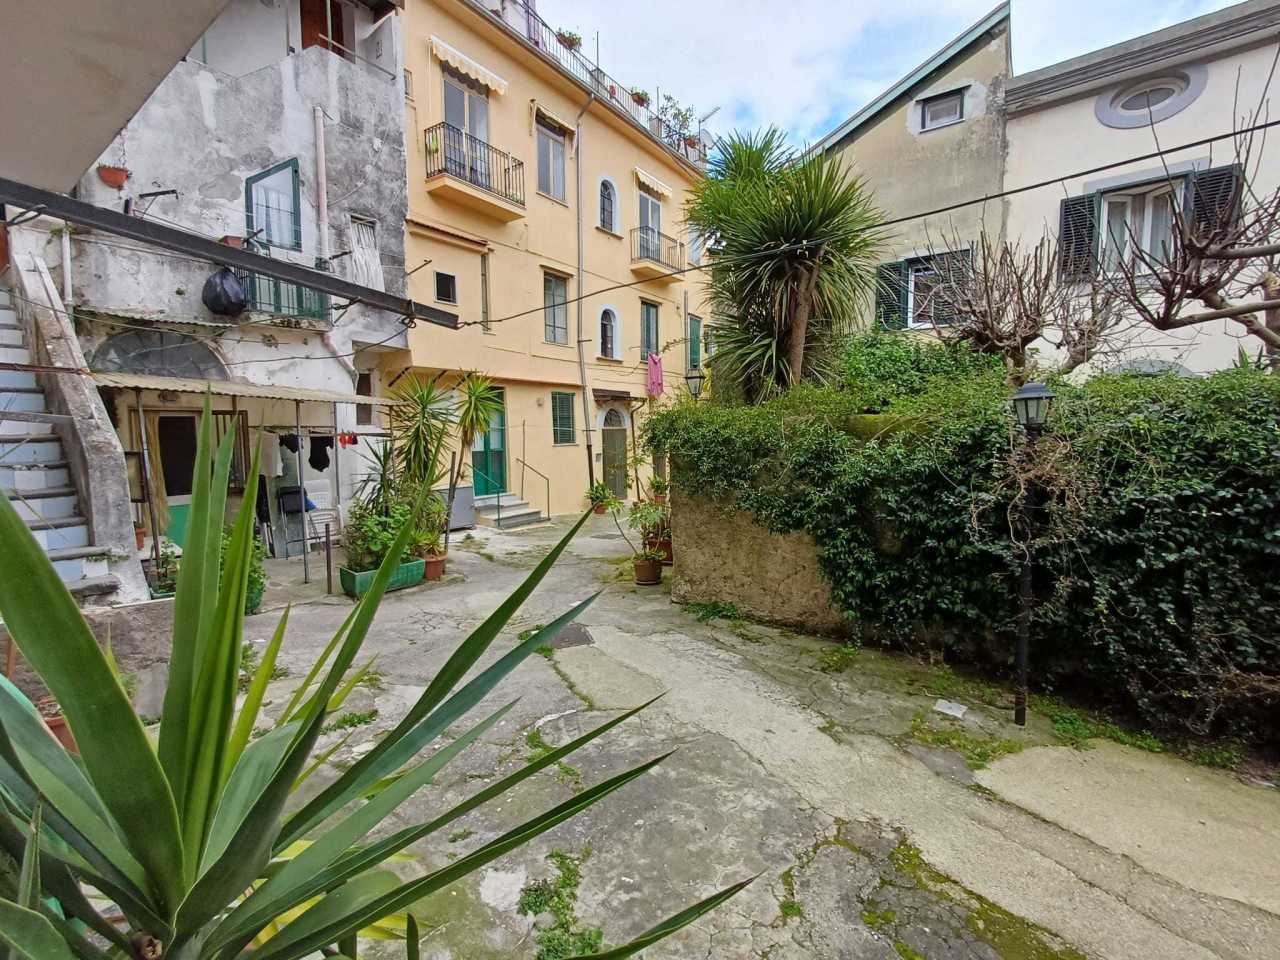 Appartamento in vendita a Cava de' Tirreni, 2 locali, prezzo € 59.000 | PortaleAgenzieImmobiliari.it